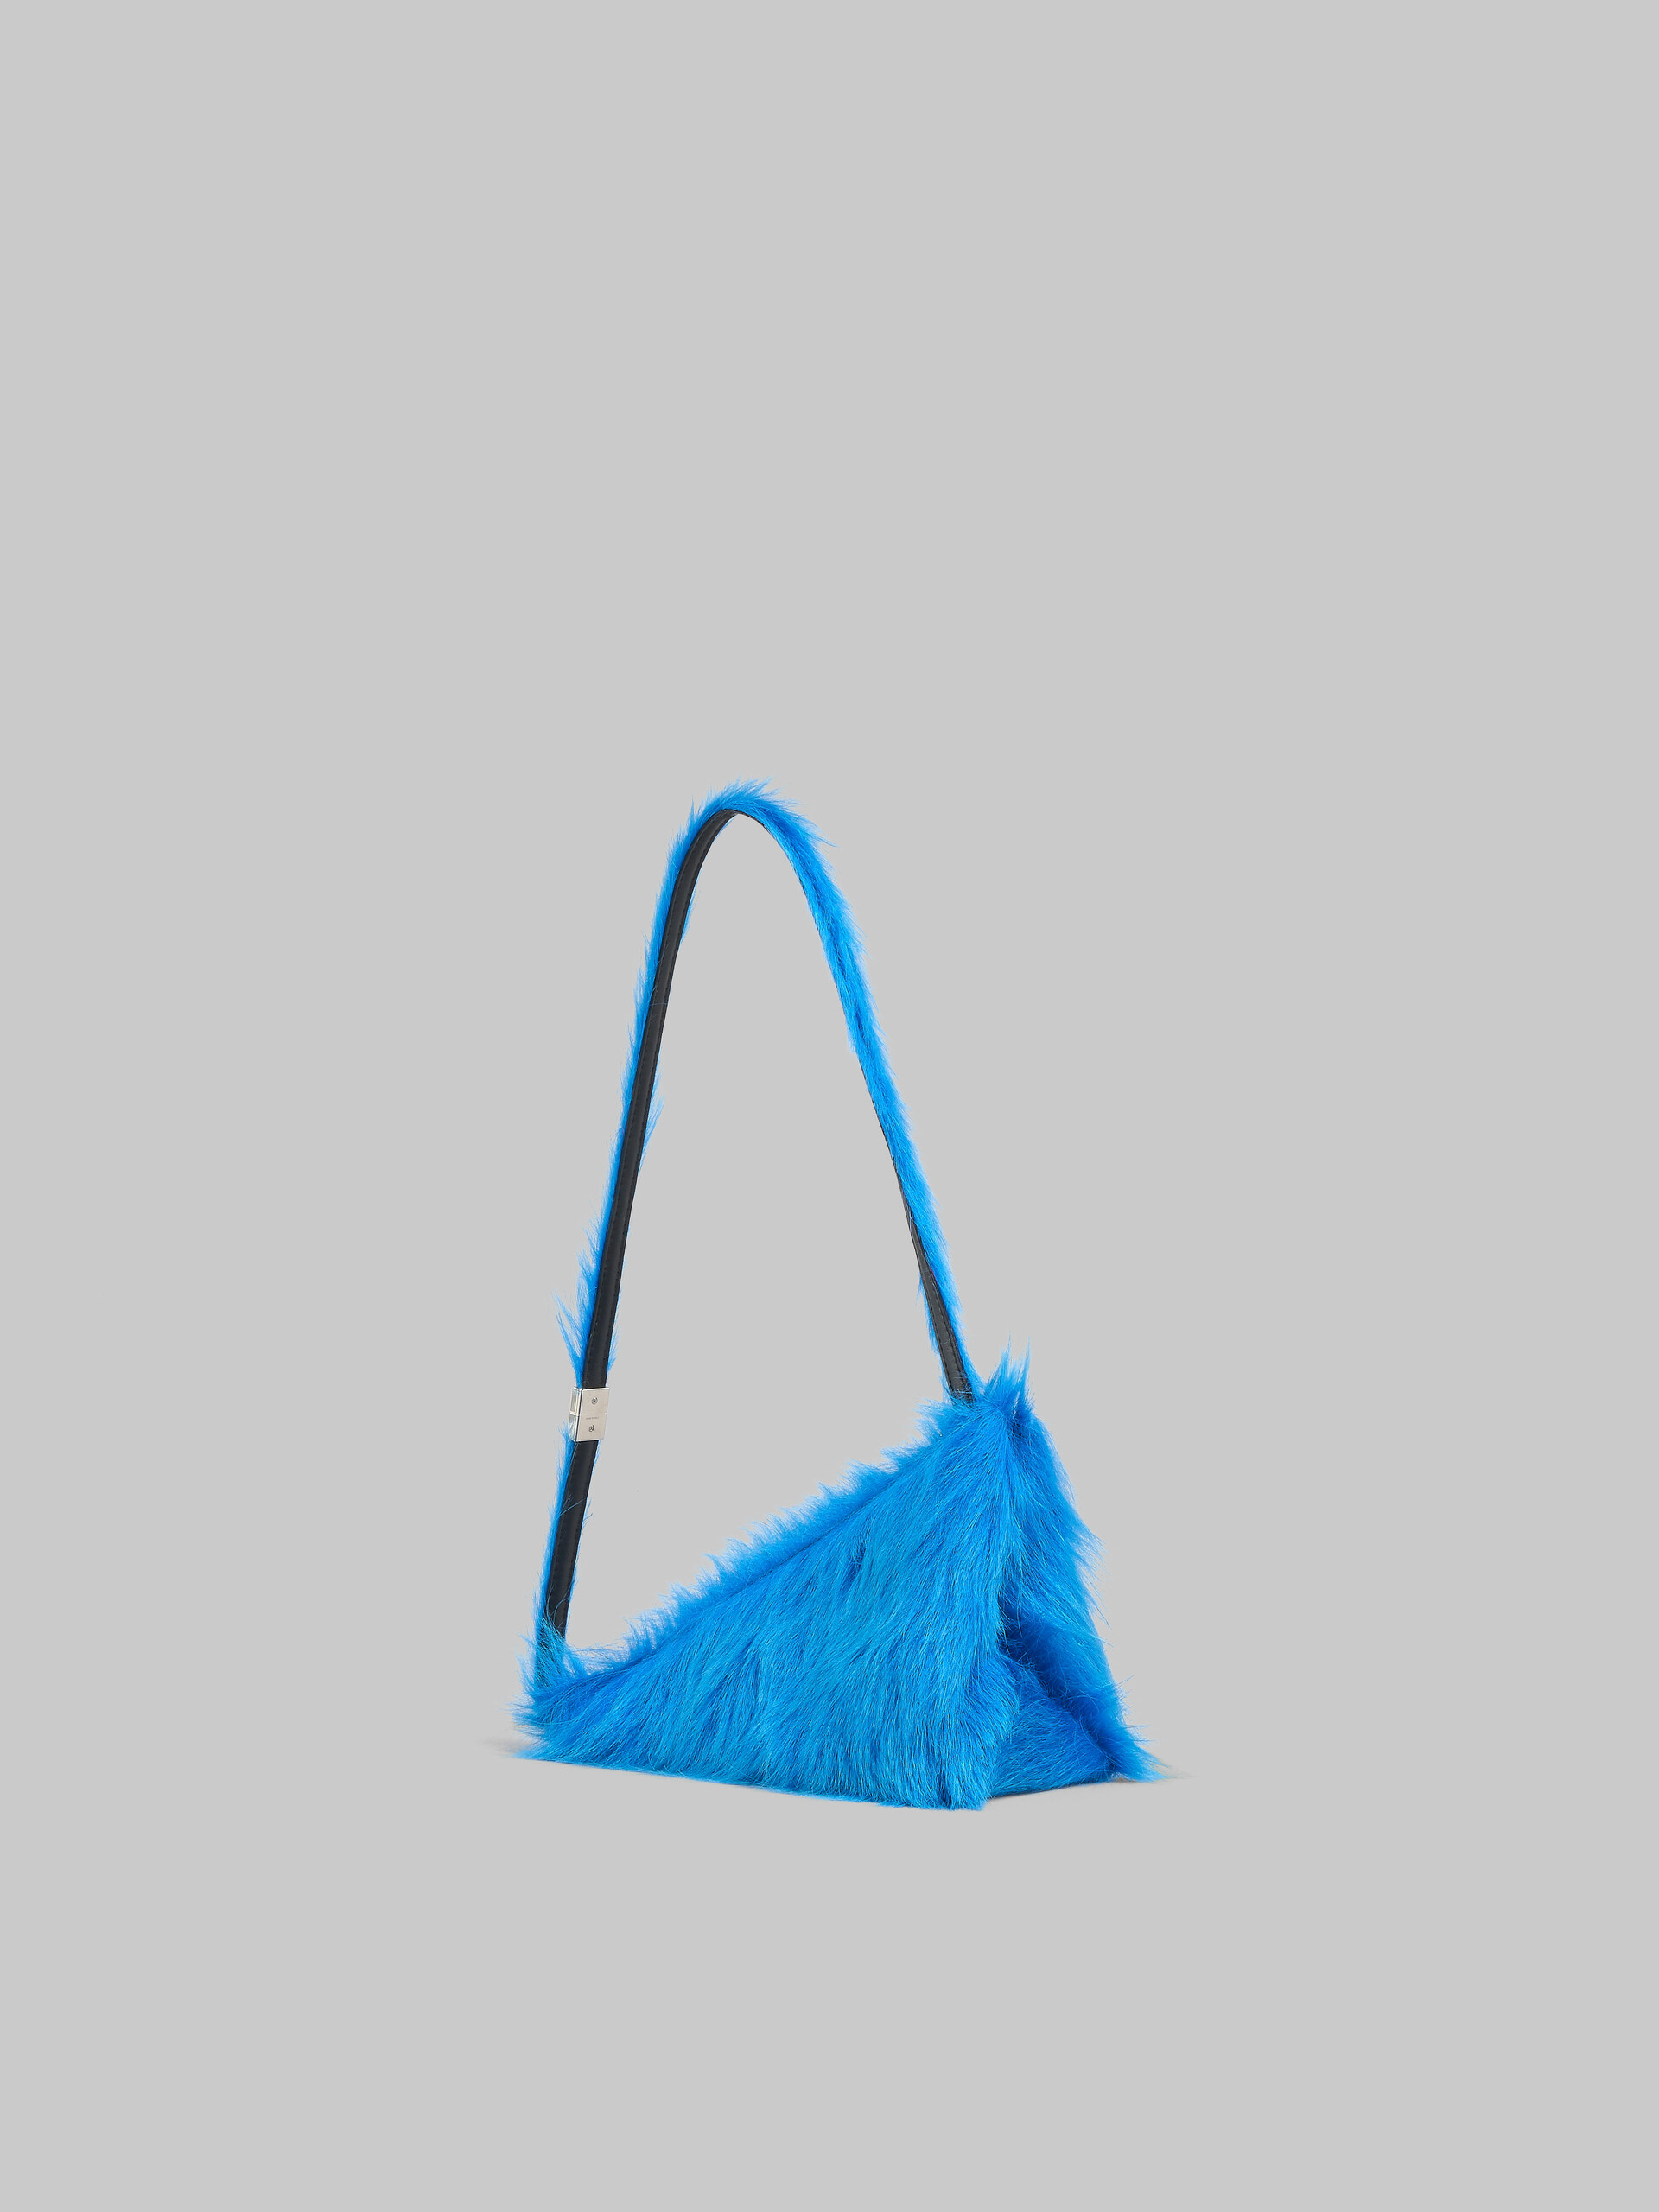 Dreieckige Umhängetasche Prisma aus Kalbsfell in Blau - Schultertaschen - Image 3